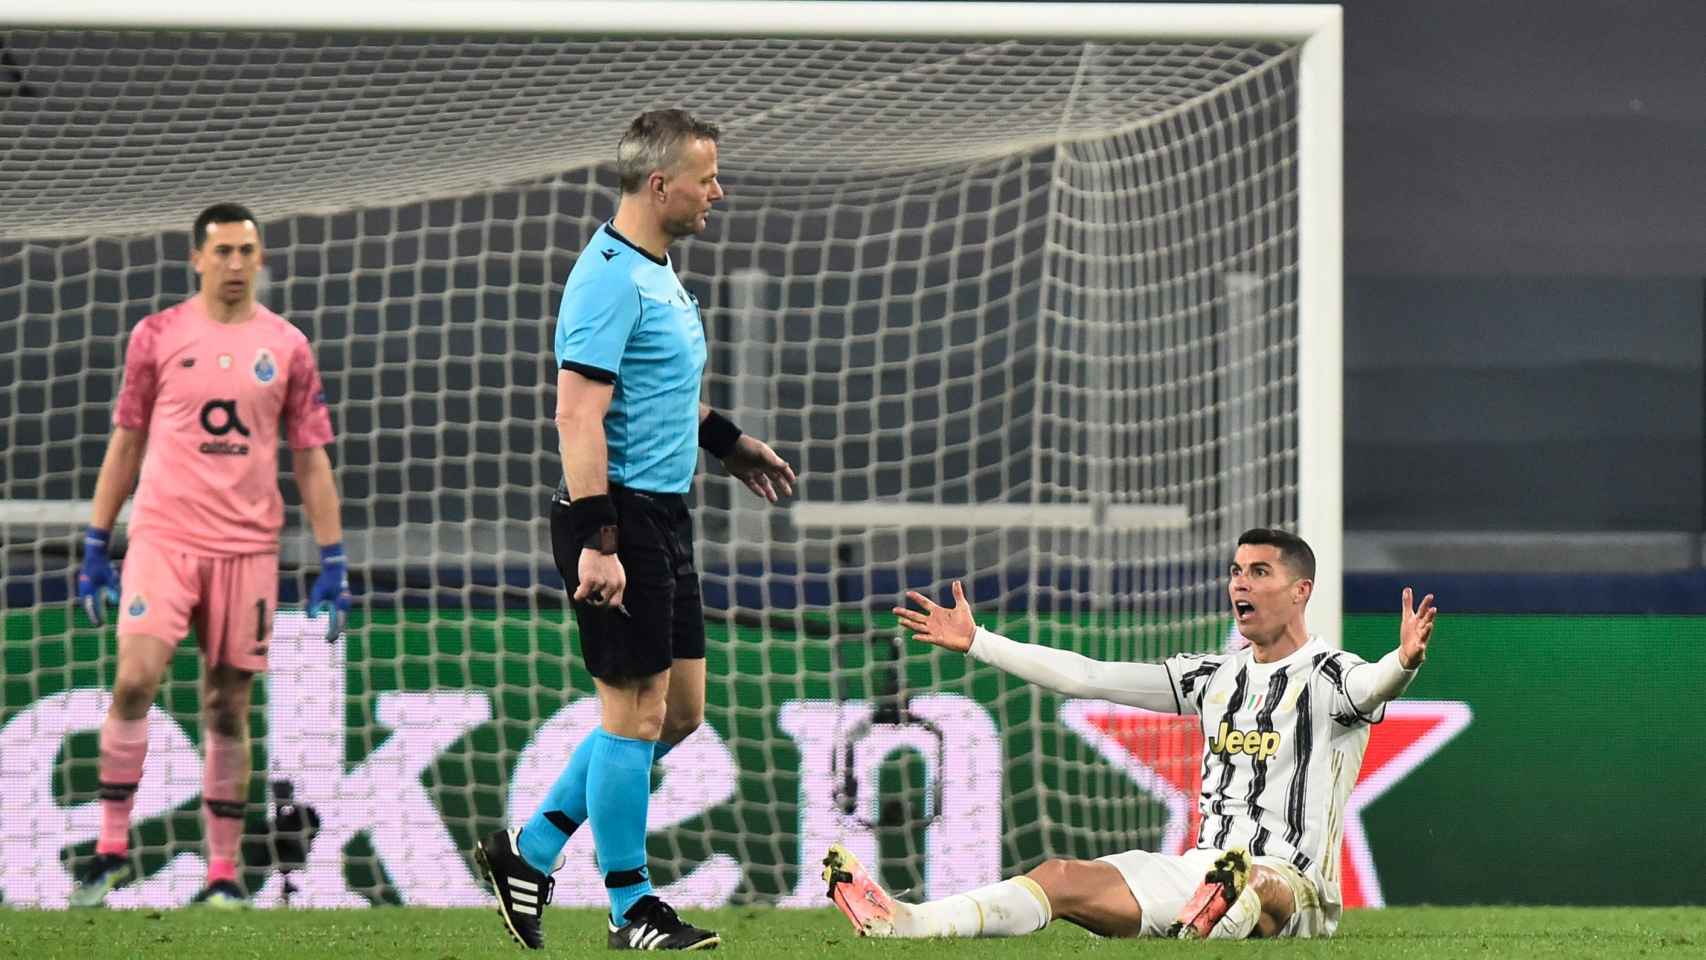 Cristiano Ronaldo protestando ante el árbitro Kuipers